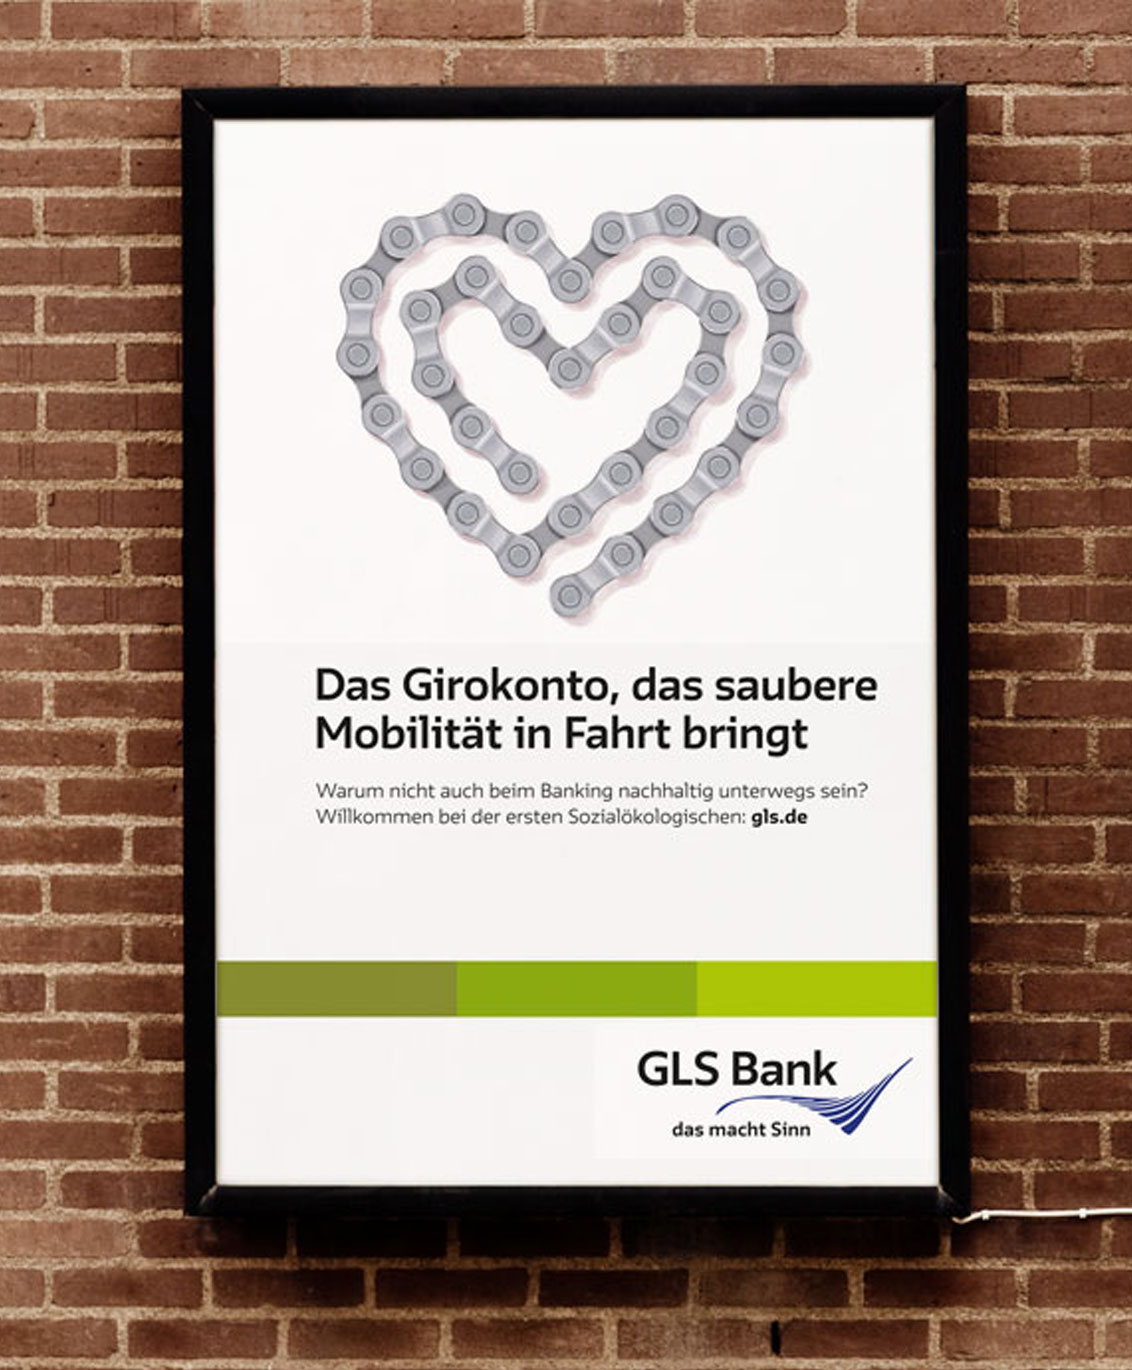 Das Girokonto bei der GLS Bank